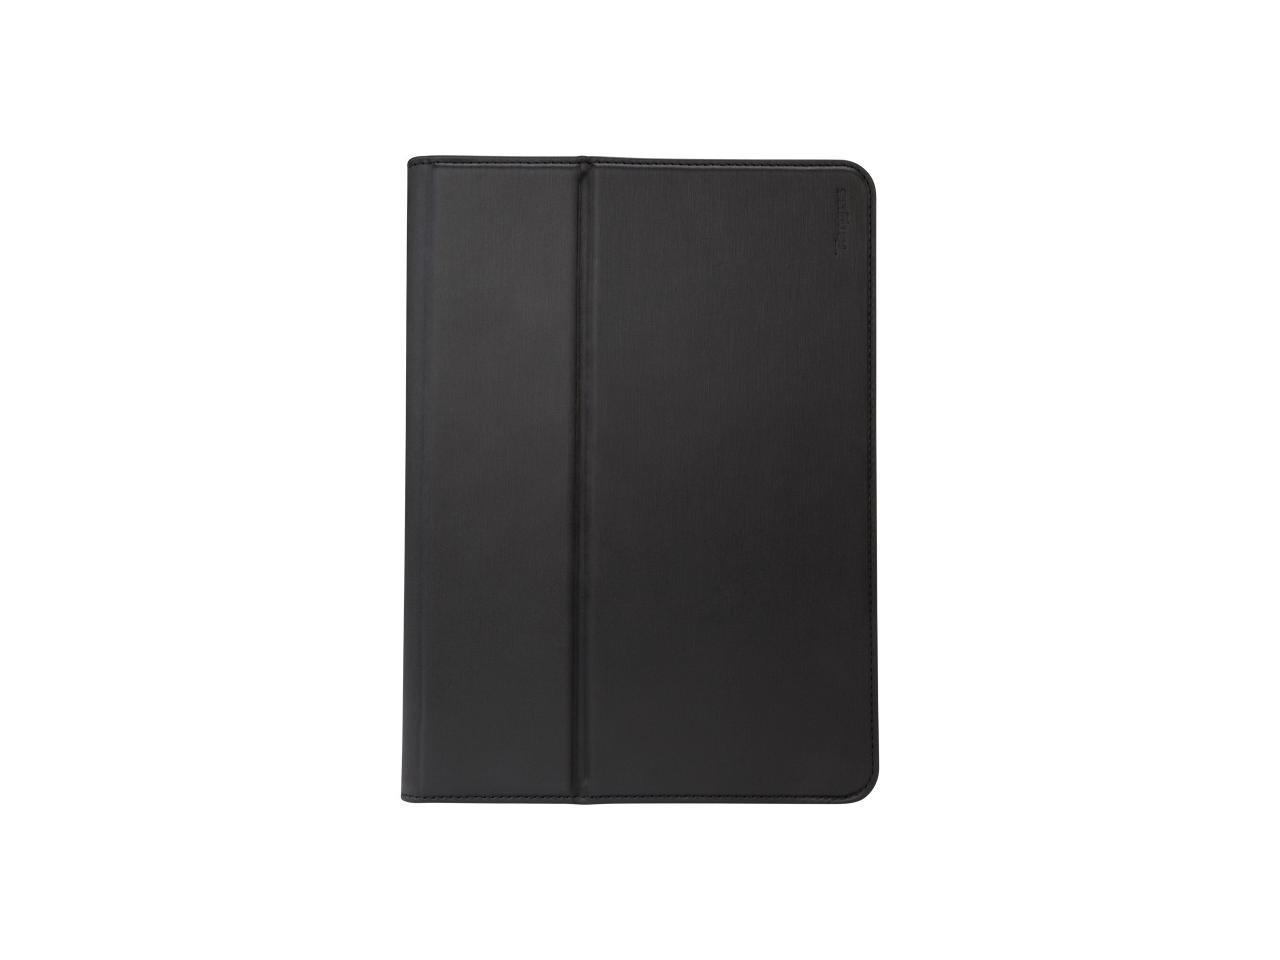 Targus Safefit Thz611gl Carrying Case Apple Ipad Air Ipad Air 2 Tablet - Black